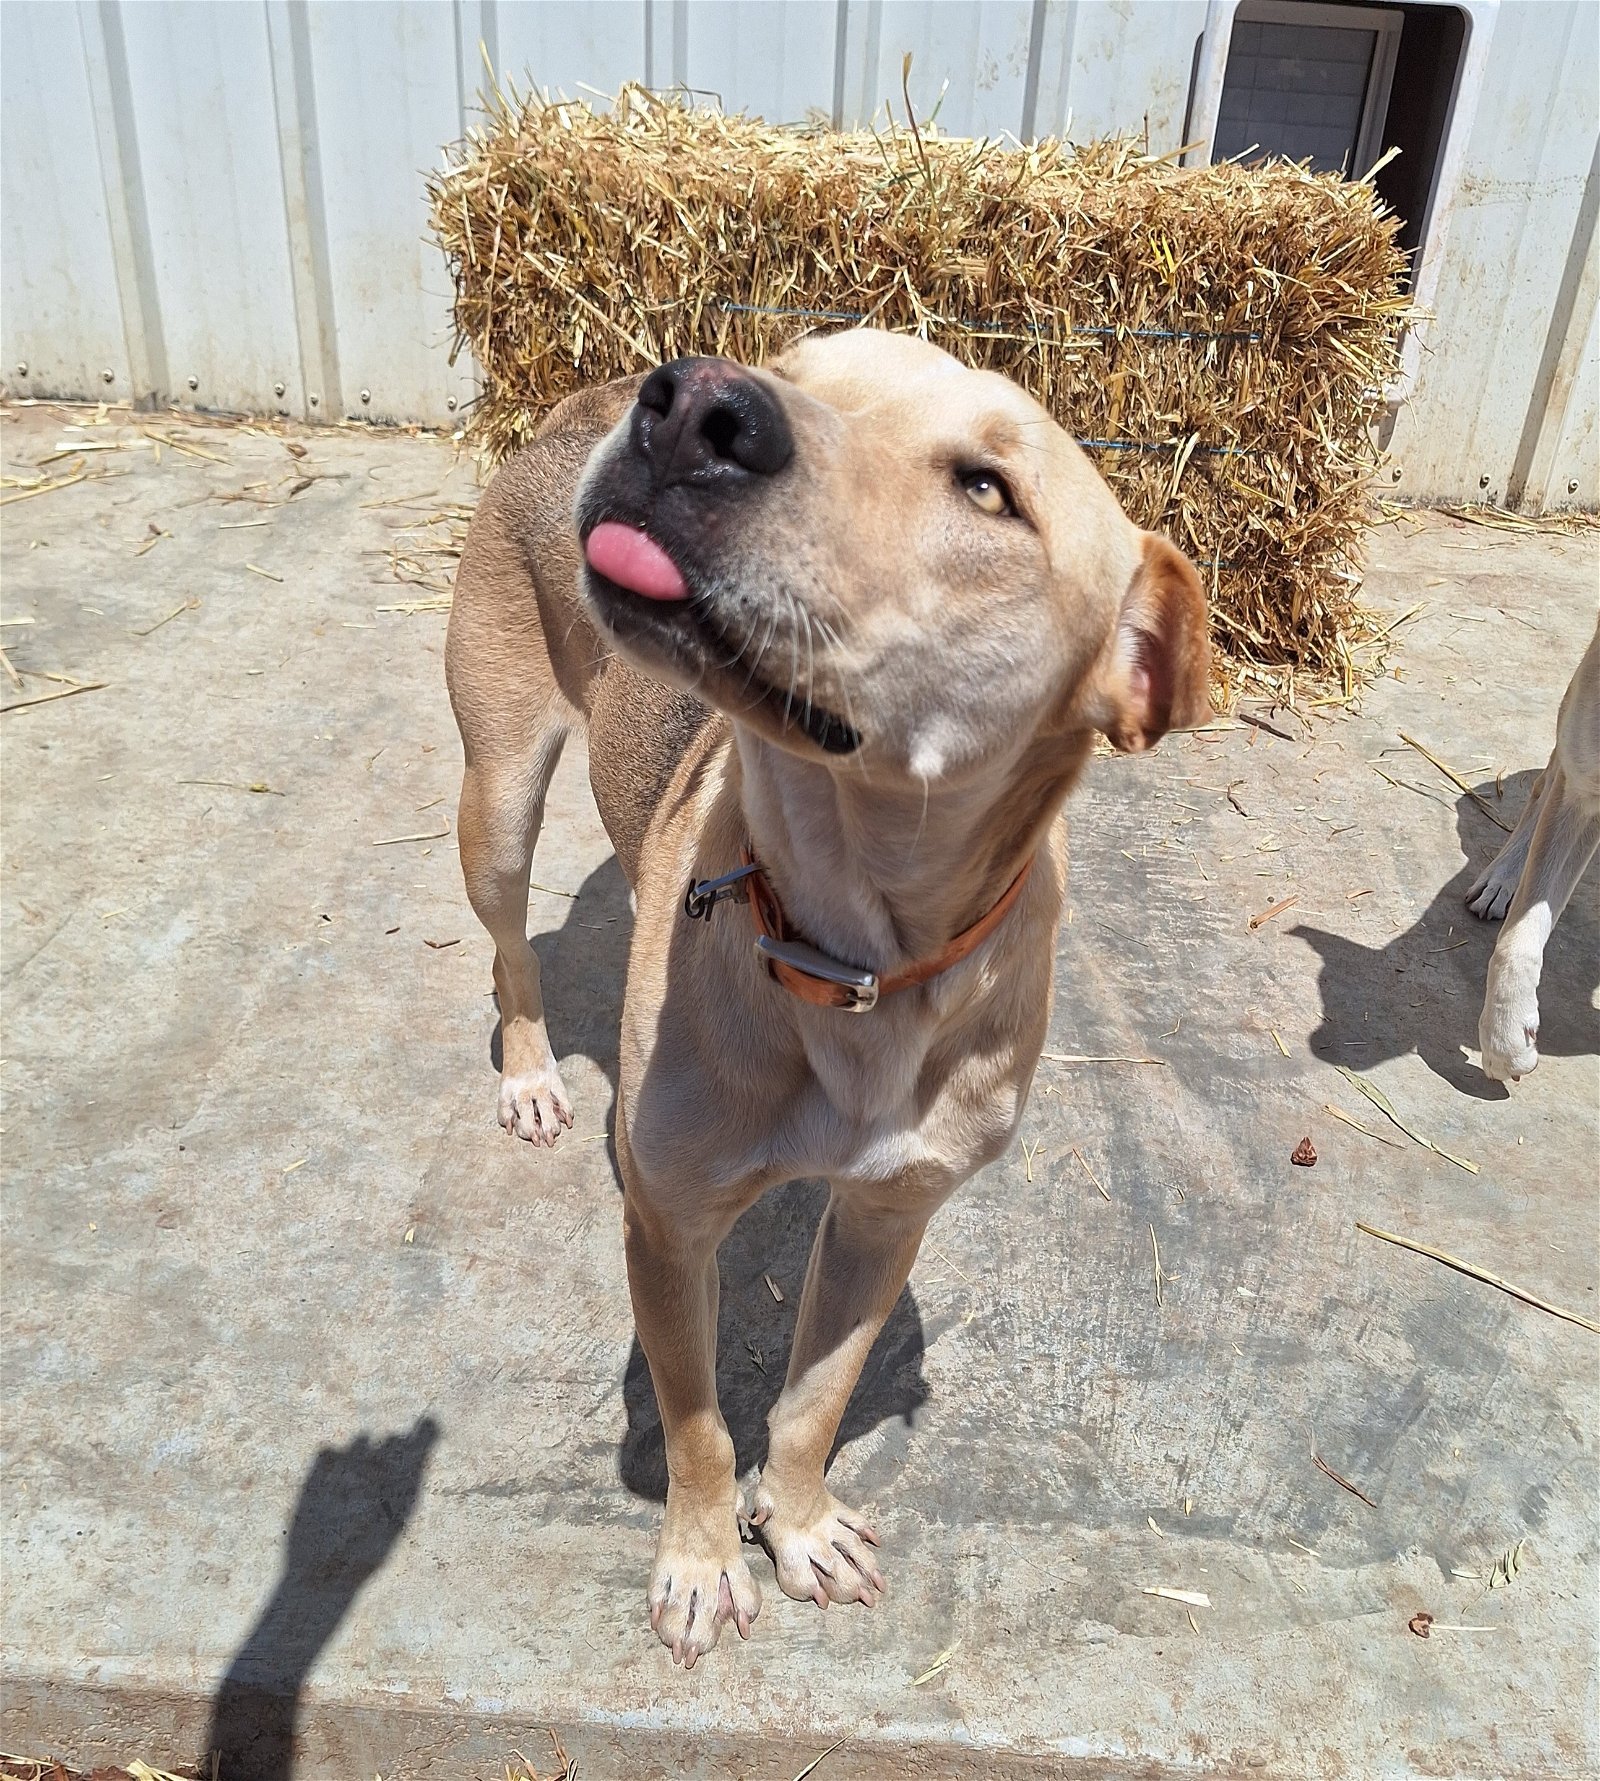 DUTCH, an adoptable Labrador Retriever, Carolina Dog in Chico, CA, 95973 | Photo Image 1